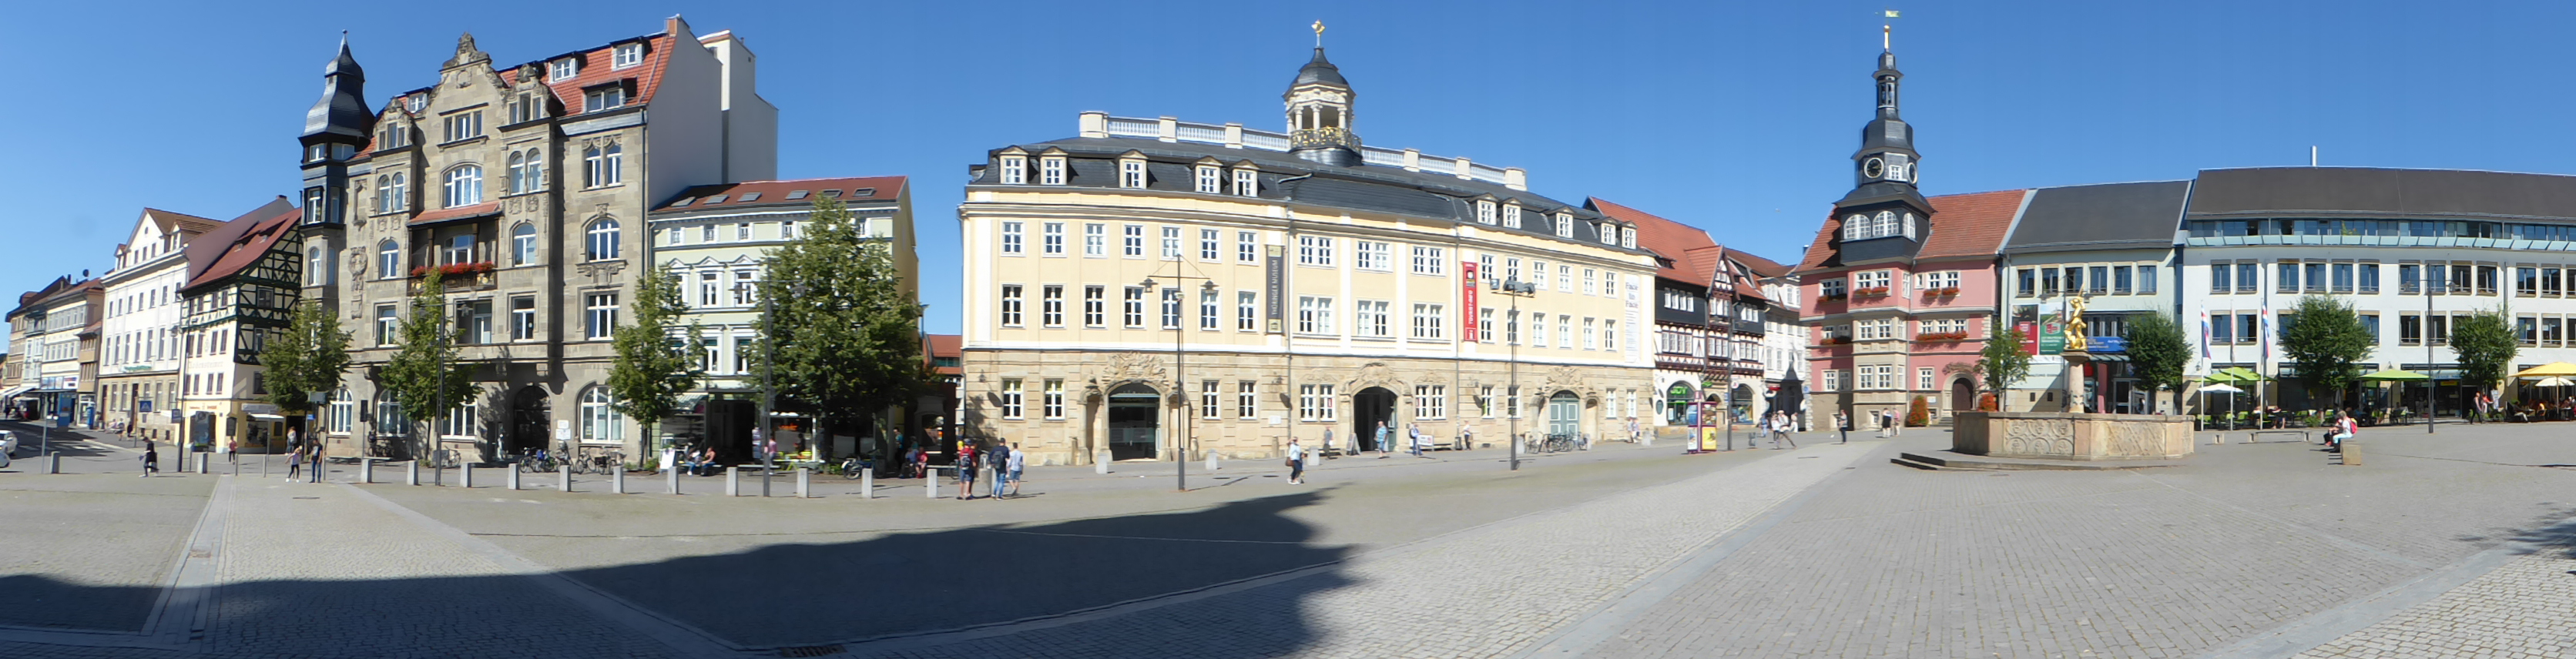 Der Markt von Eisenach Panorama